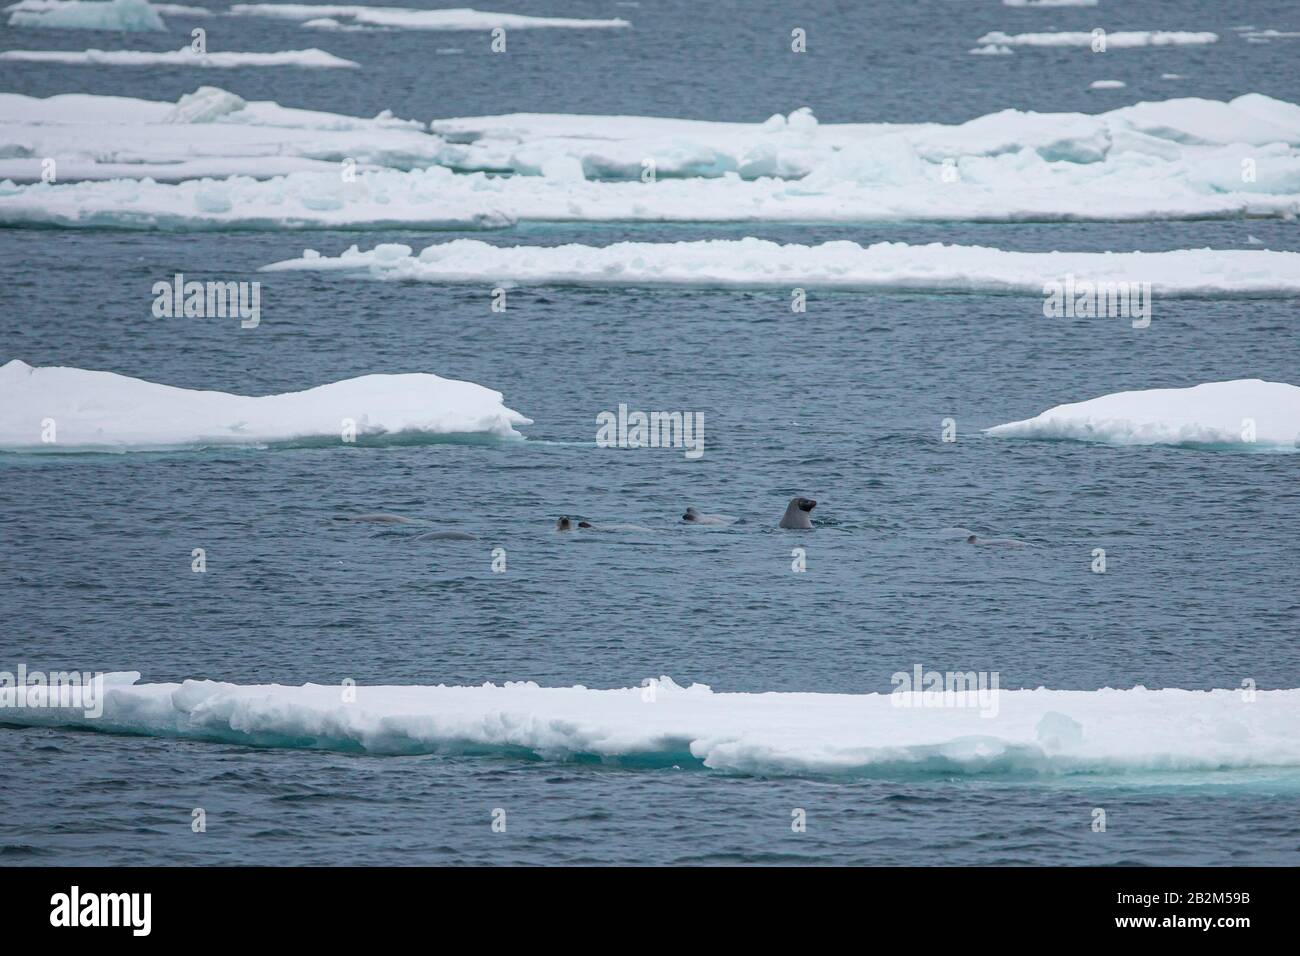 seals swimming in arctic water between icebergs Stock Photo